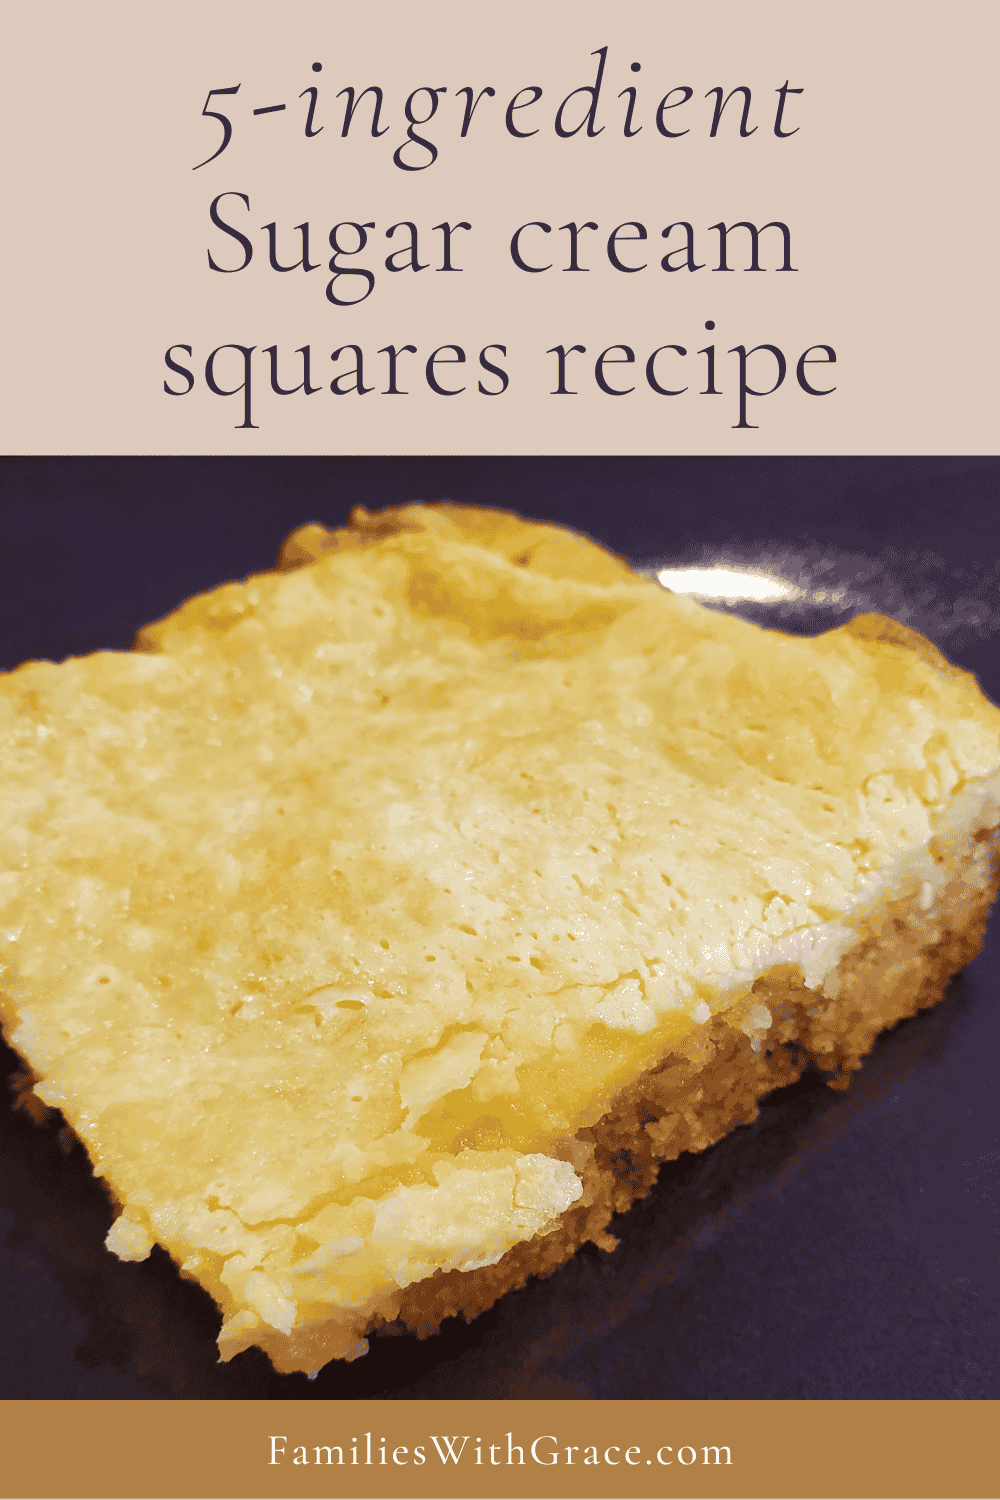 Sugar cream squares recipe